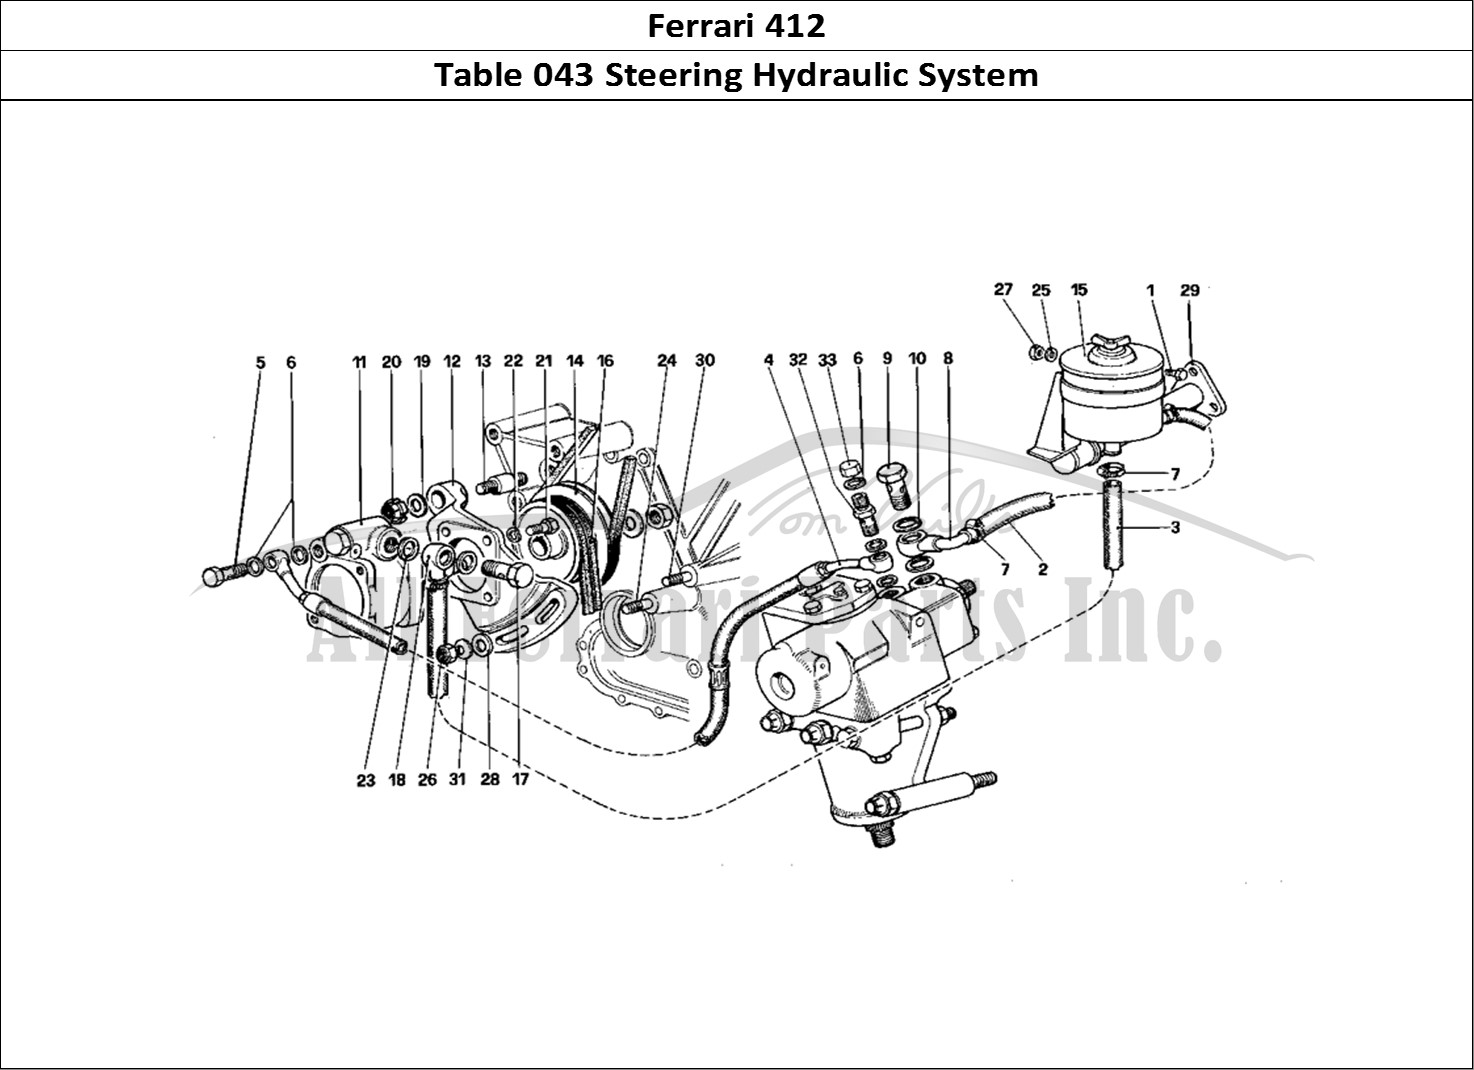 Ferrari Parts Ferrari 412 (Mechanical) Page 043 Hydraulic Steering System